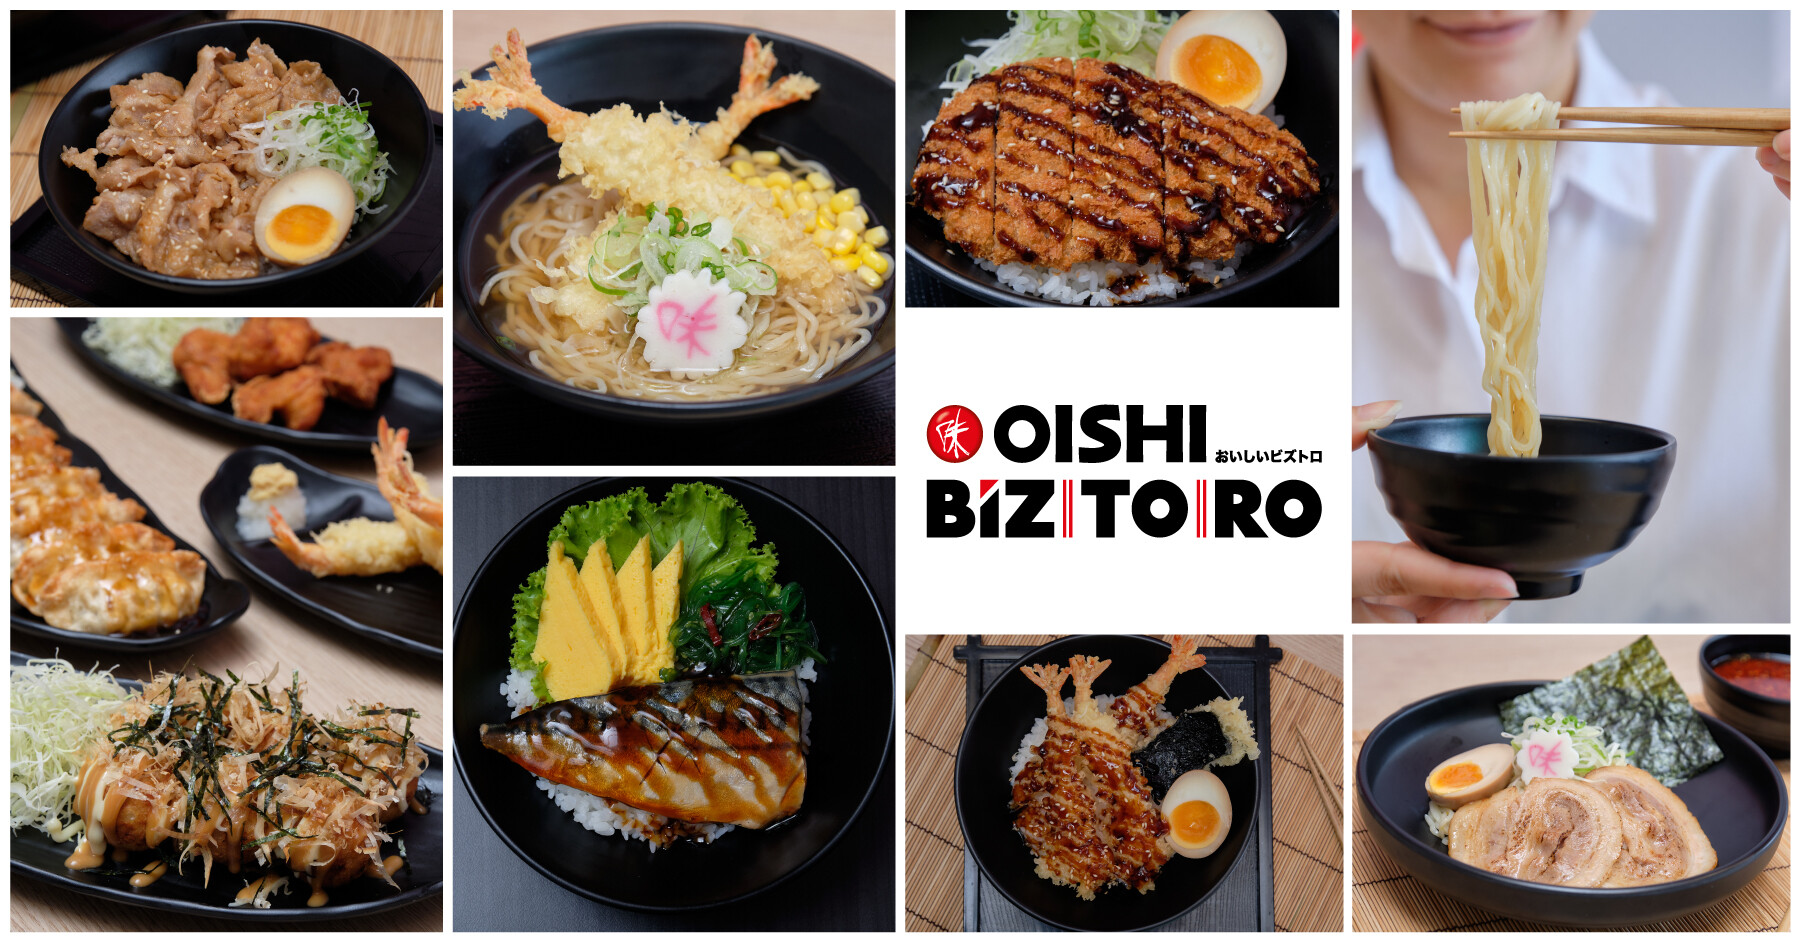 "โออิชิ" ลุยปั้นแบรนด์ใหม่ !!! เปิด "โออิชิ บิซโทโระ" ทางเลือกความอร่อยง่าย ๆ สไตล์ญี่ปุ่นโมเดิร์น ประชิดนักกิน - ลูกค้านอกห้างฯ มากขึ้น